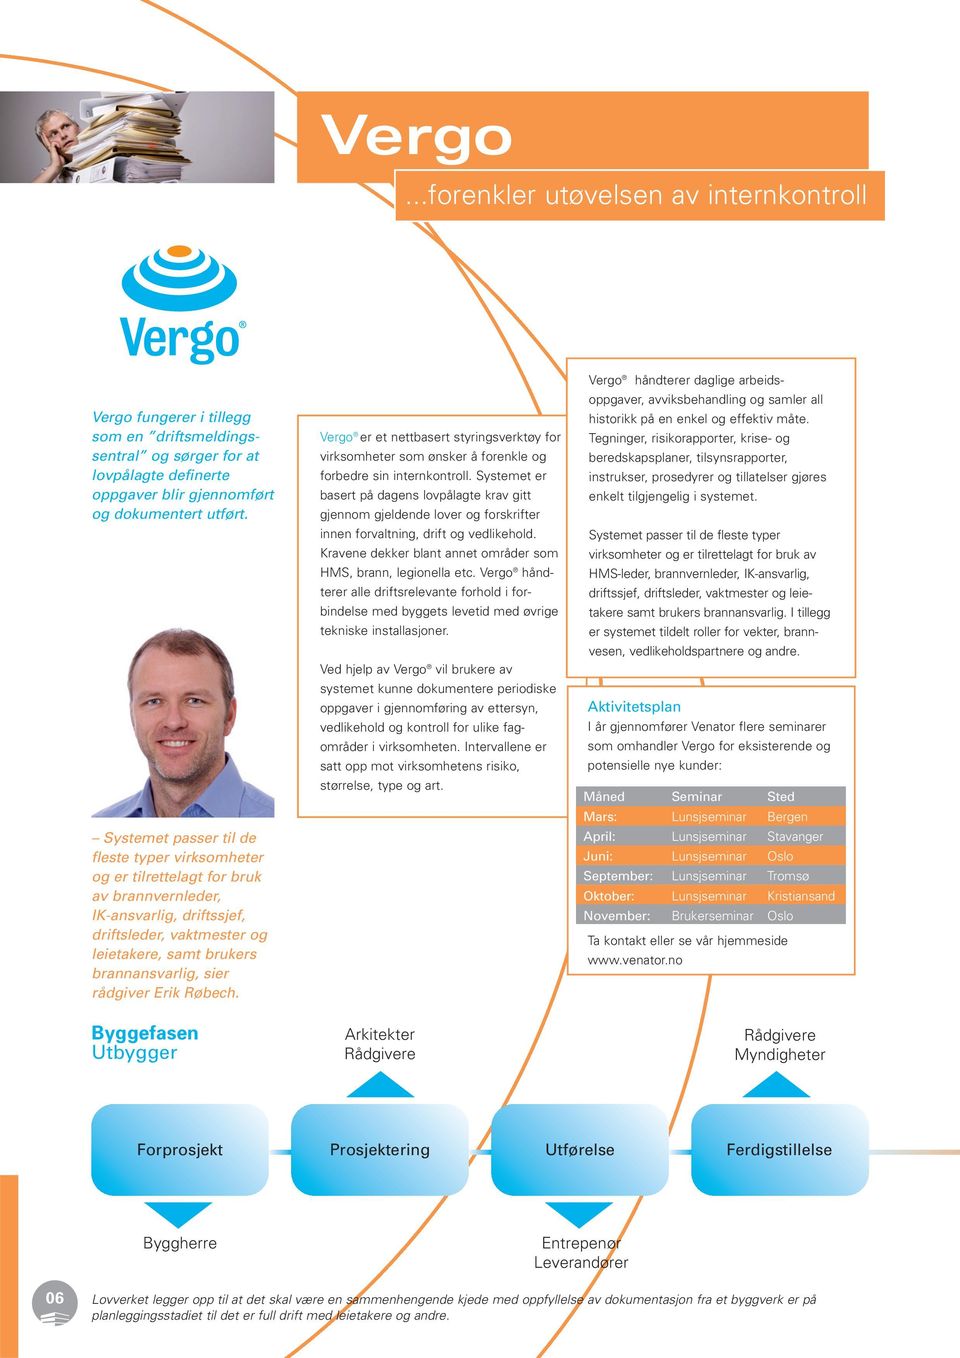 rådgiver Erik Røbech. Byggefasen Utbygger Vergo er et nettbasert styringsverktøy for virksomheter som ønsker å forenkle og forbedre sin internkontroll.